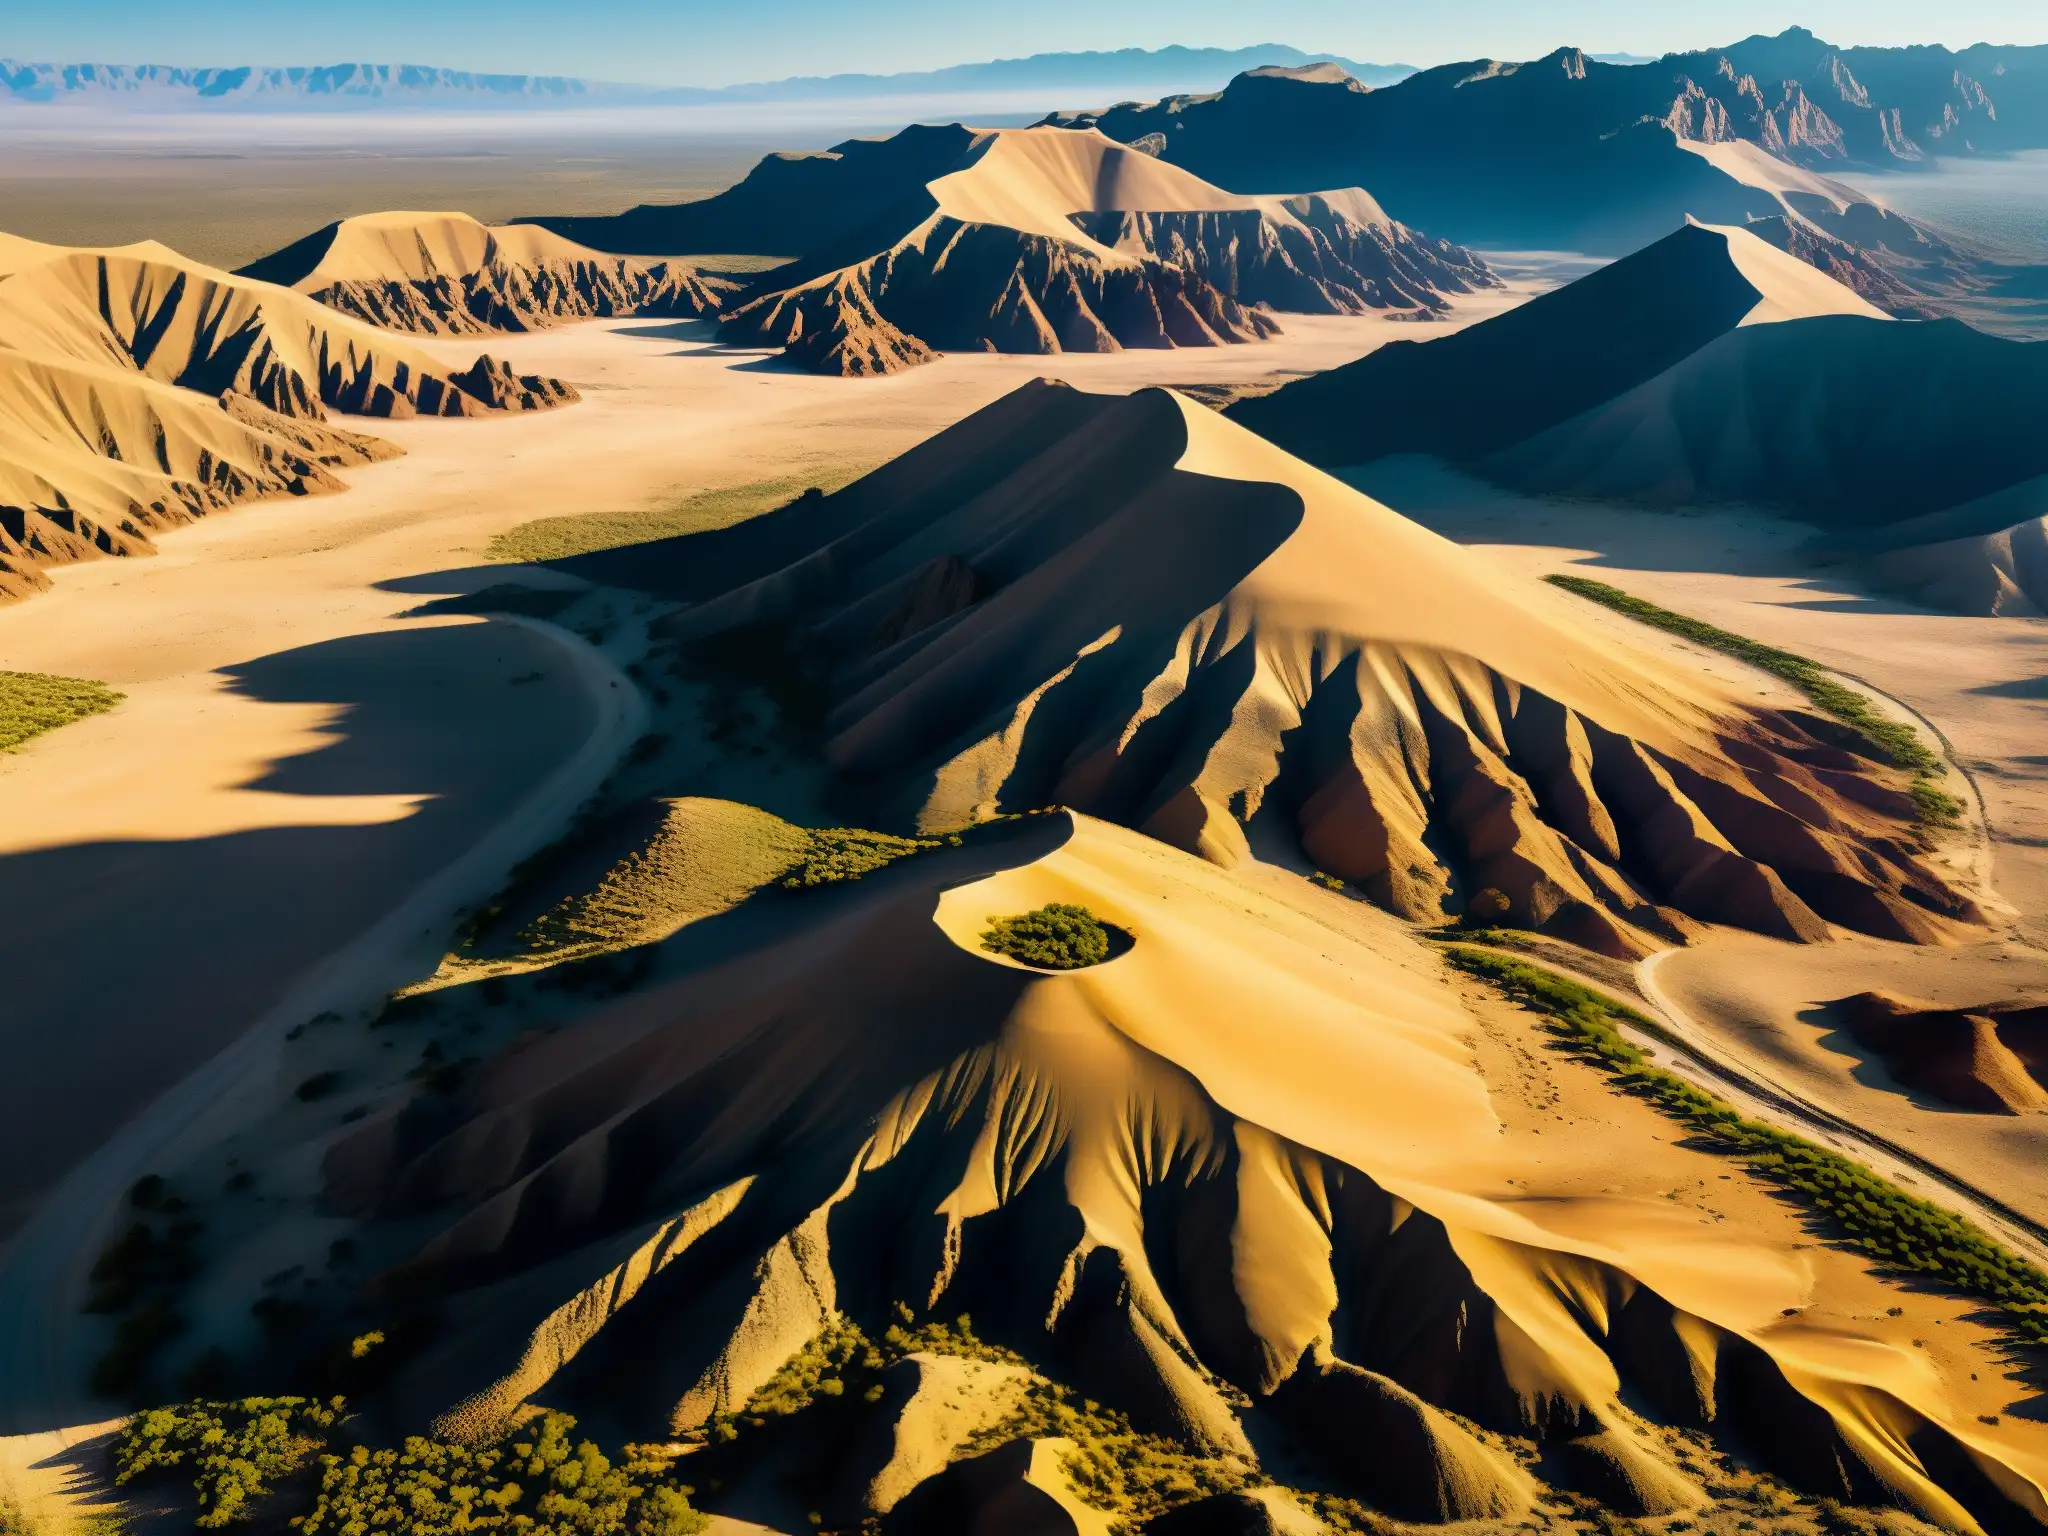 Vista aérea impresionante de la misteriosa Zona del Silencio en el desierto del norte de México, revelando su paisaje único y enigmático